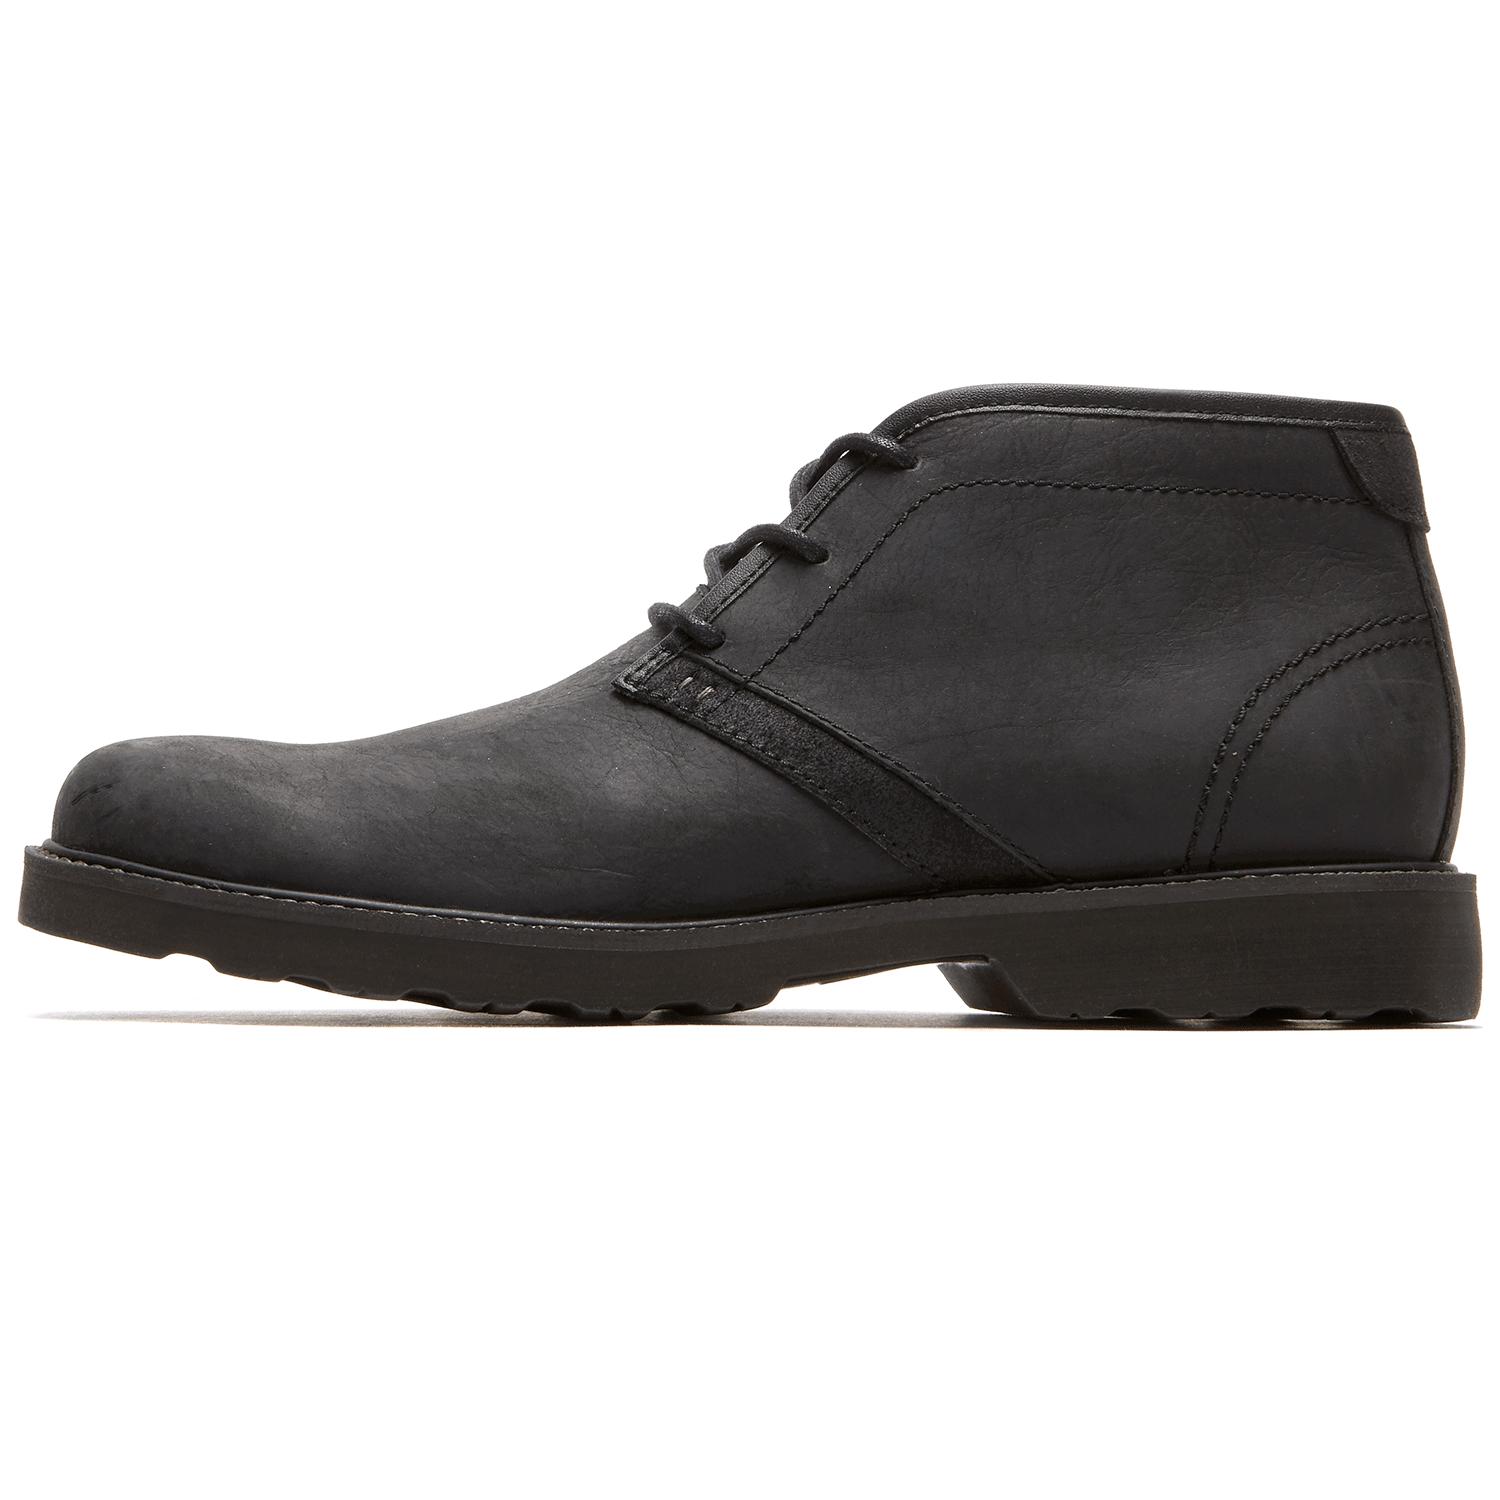 Rockport Leather Revlite Dress Revdash Boots in Black for Men - Lyst